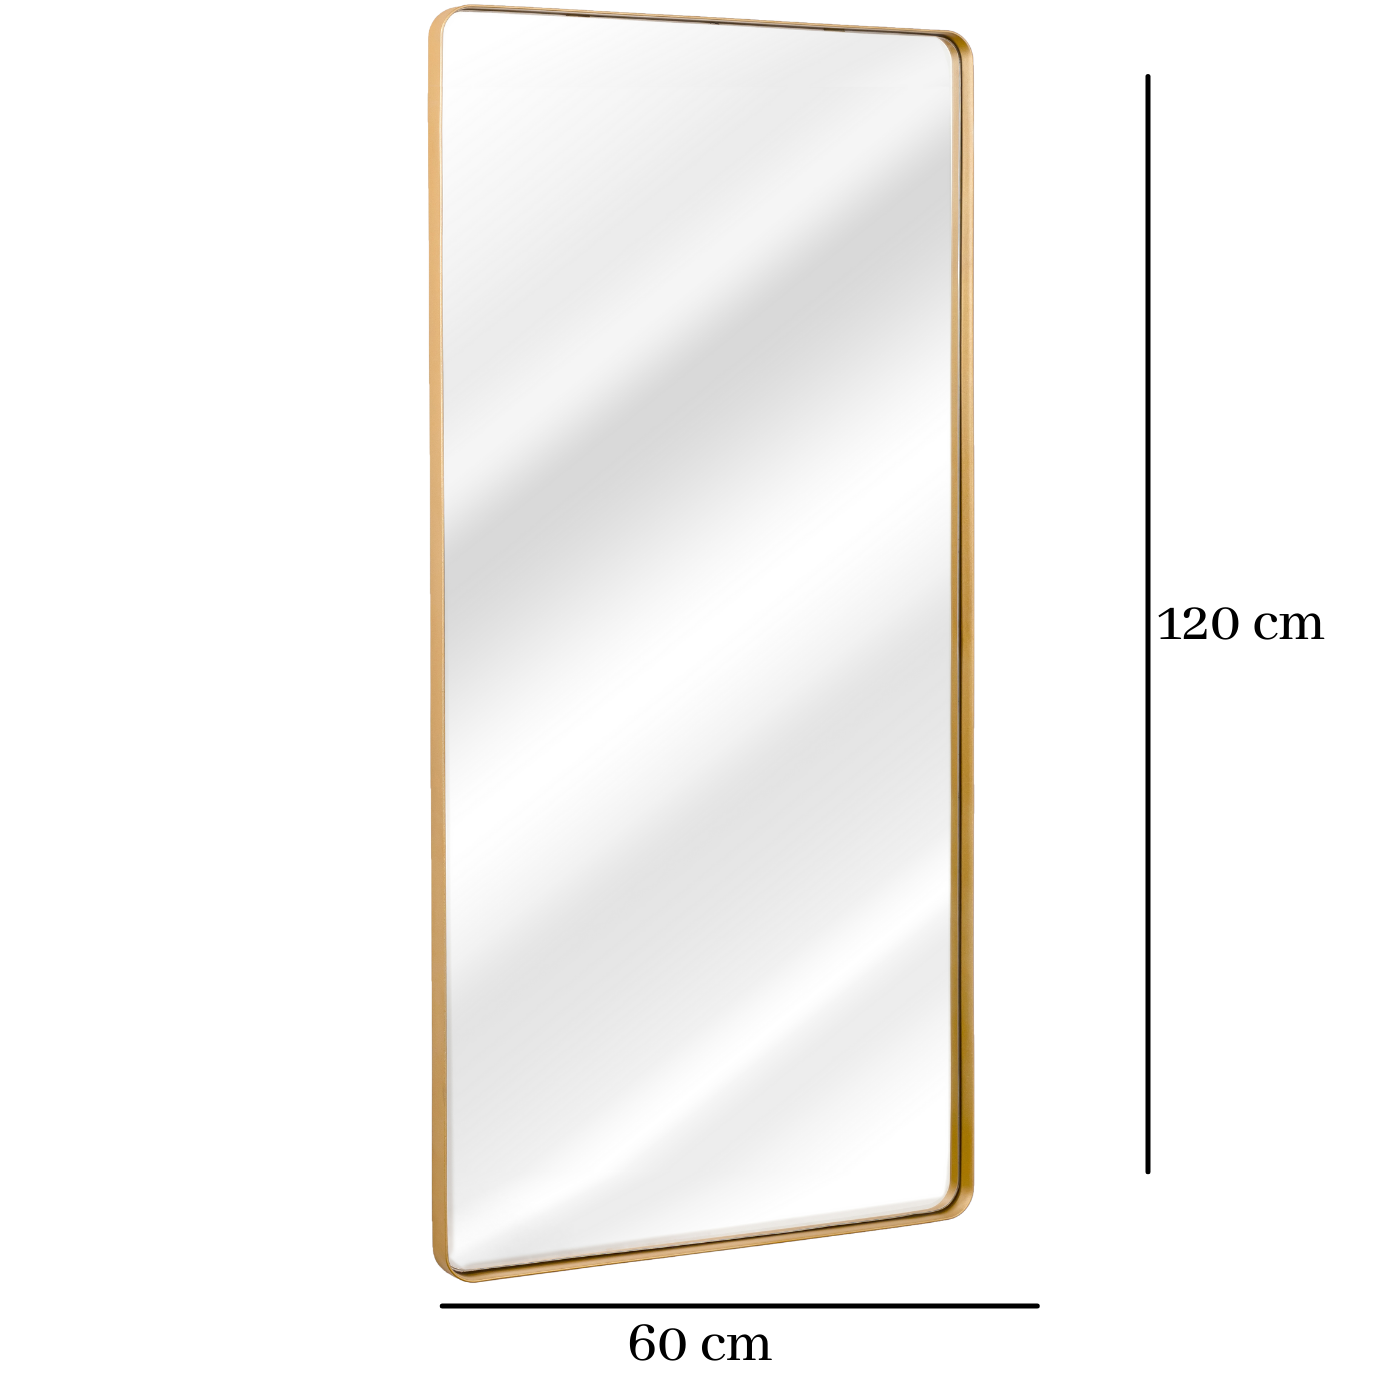 Espelho Grande Retangular Moldura Banheiro Quarto Sala 120x60 Cores:dourado - 3